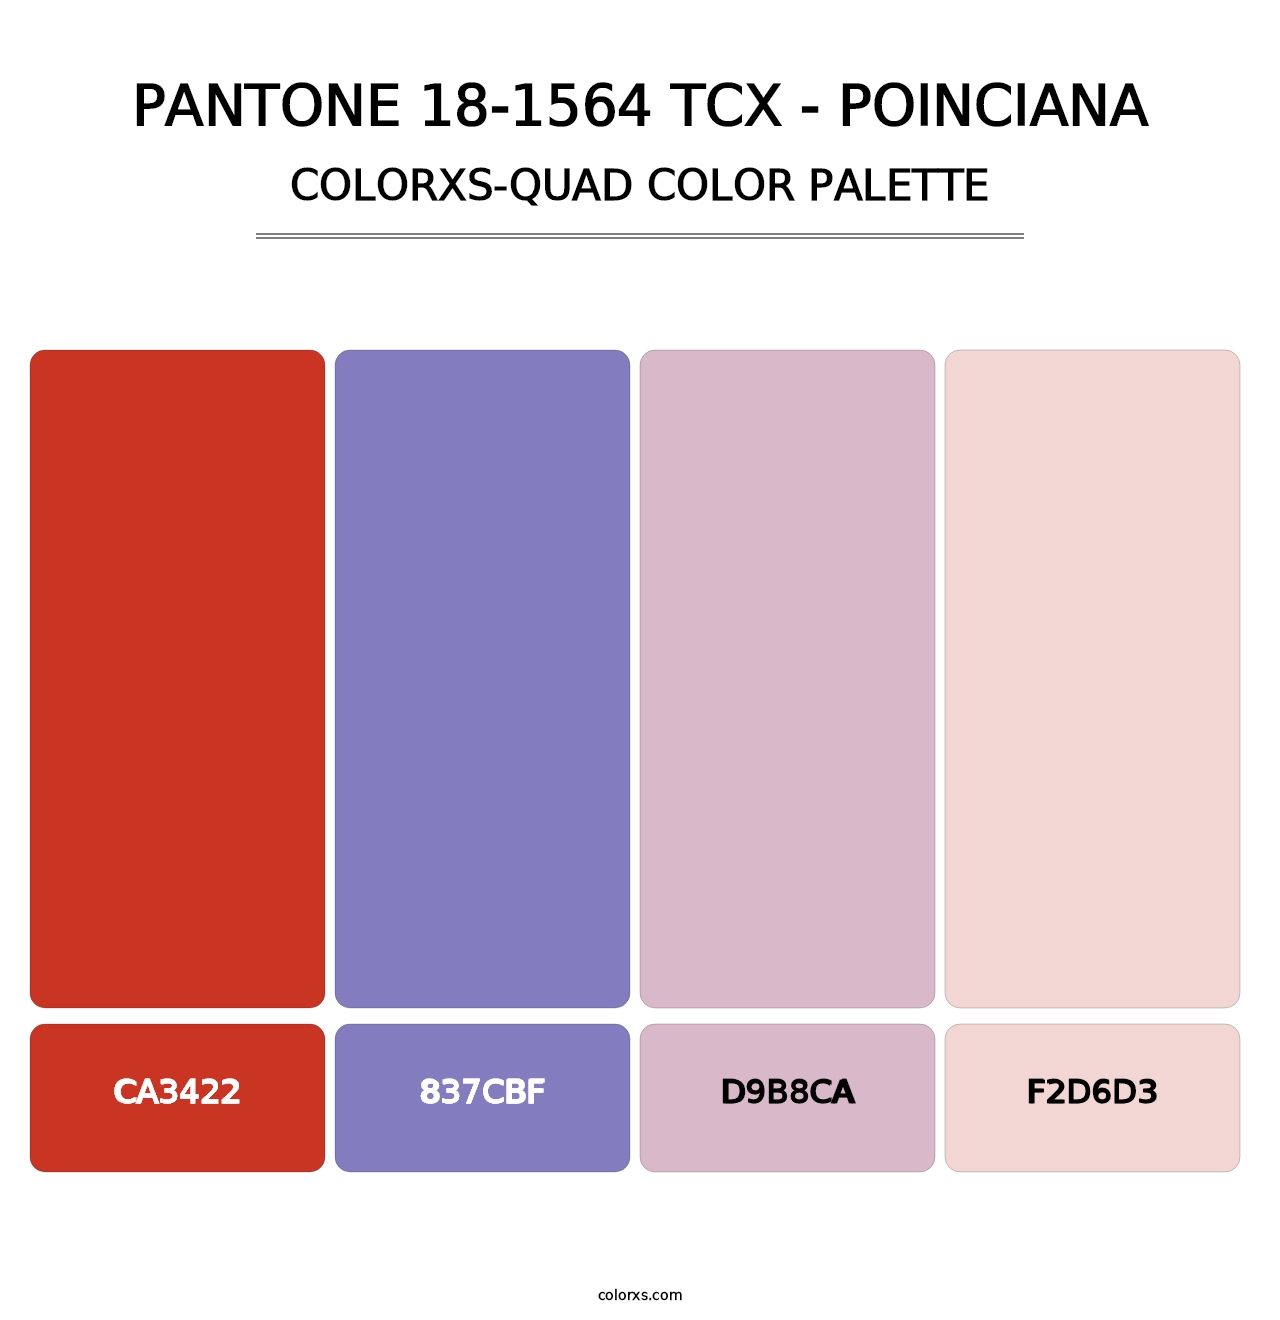 PANTONE 18-1564 TCX - Poinciana - Colorxs Quad Palette